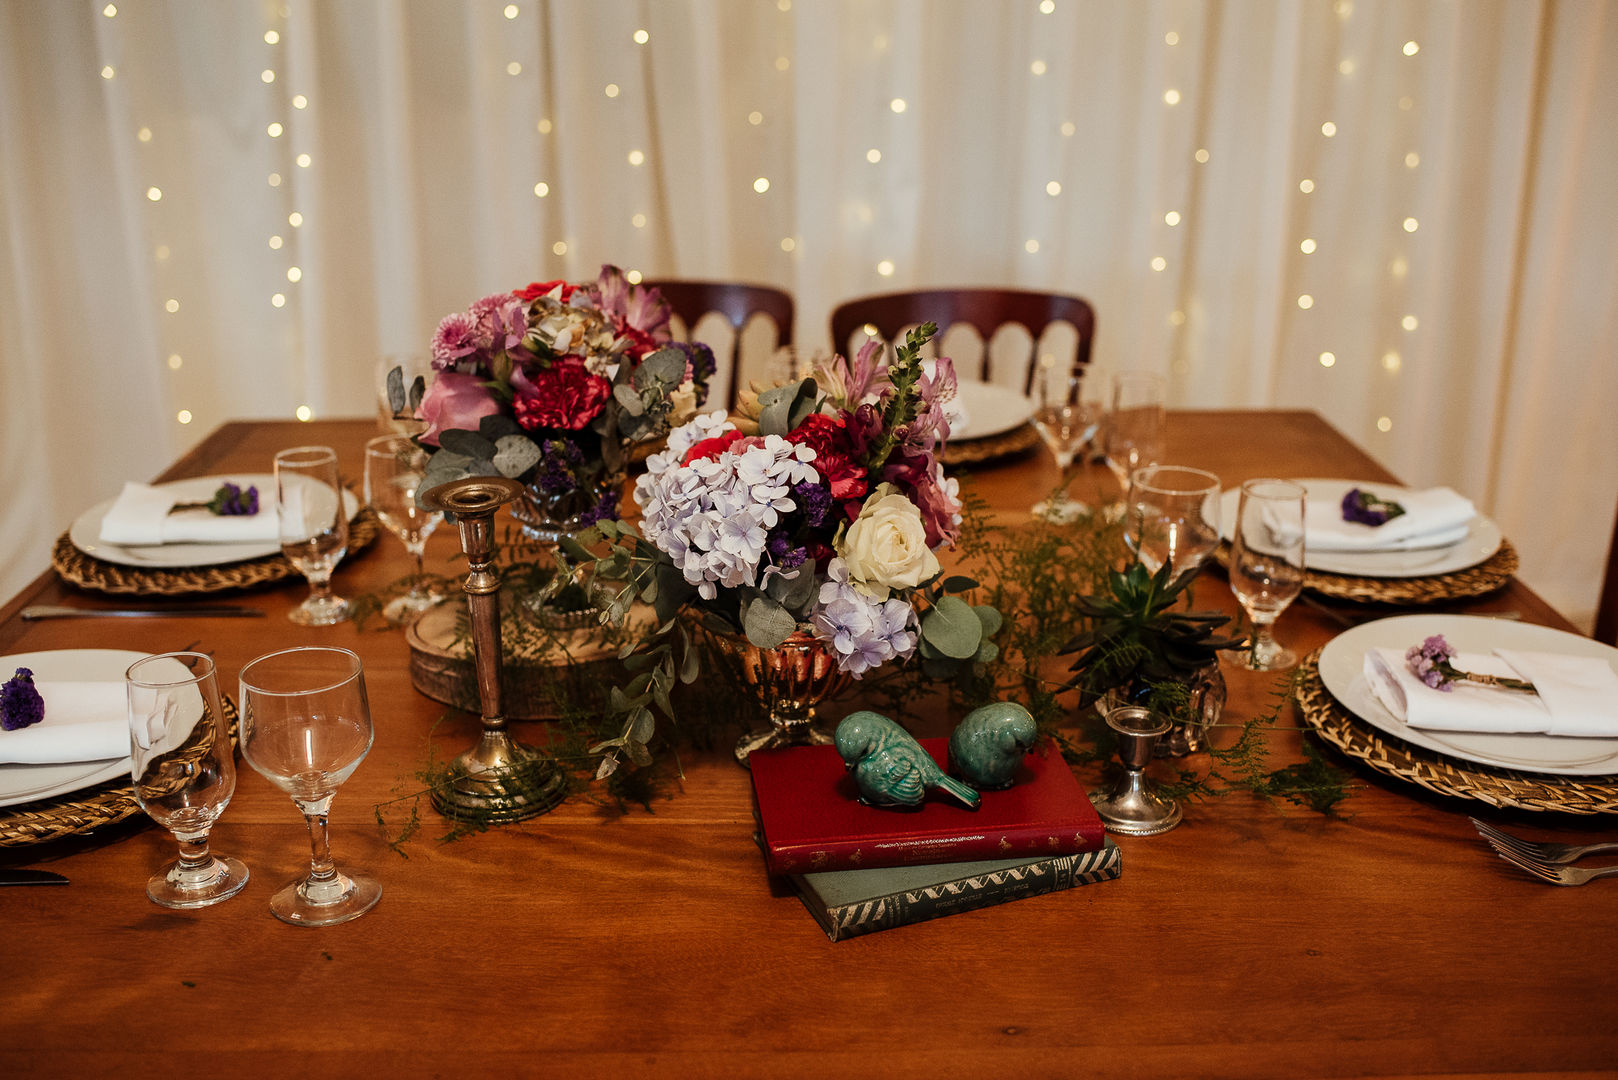 Mesa para Noivos Cena De.Coração Jardins campestres mesa de jantar,noivos,casamento,decoração,flores,vintage,Plantas e flores